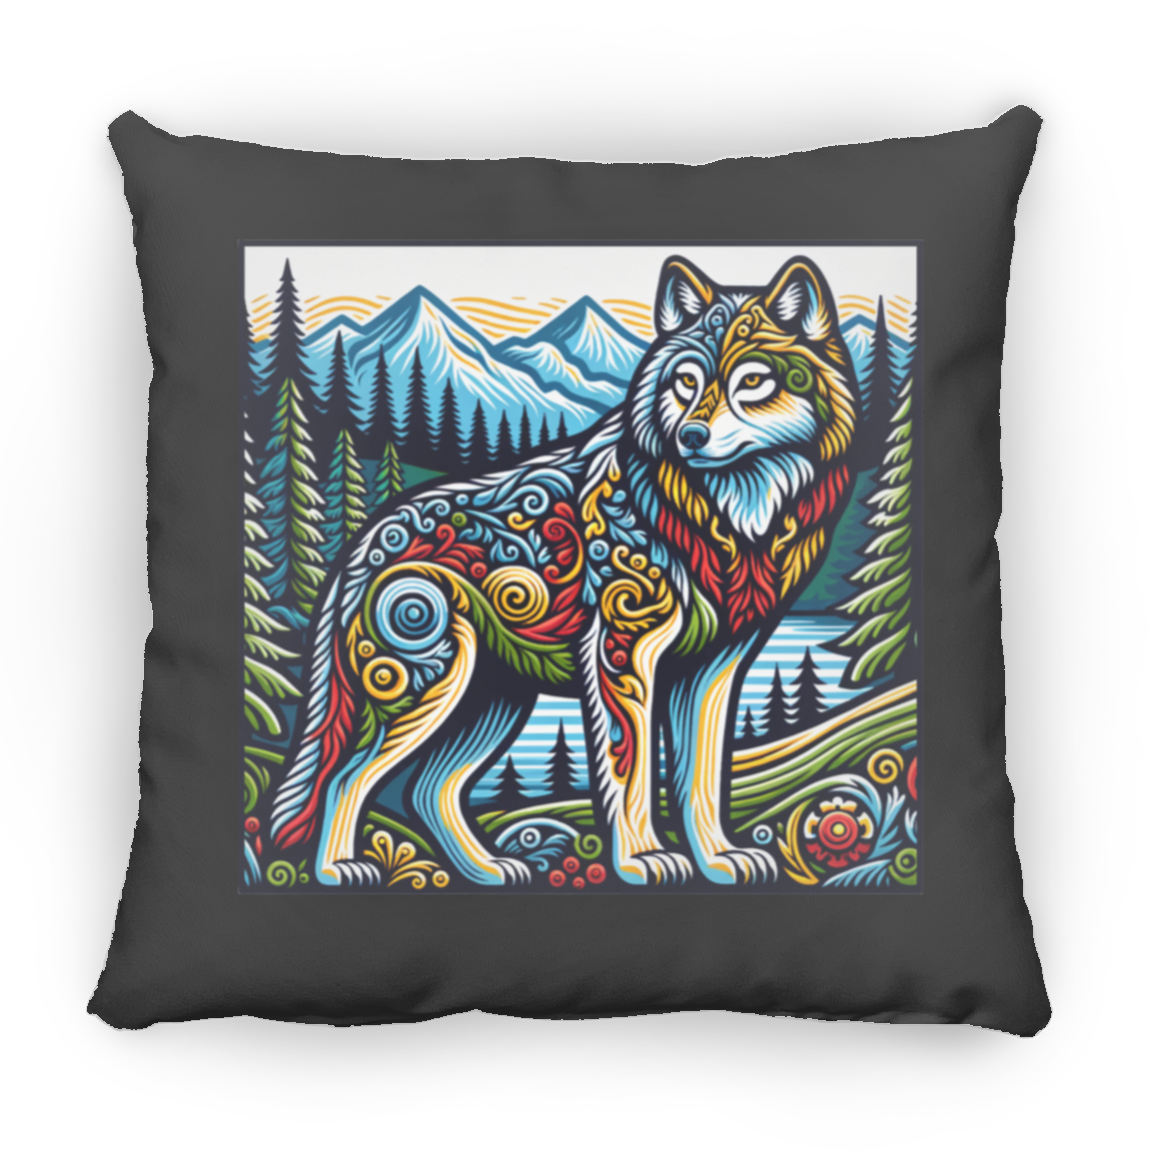 Folk Art Wolf - Pillows